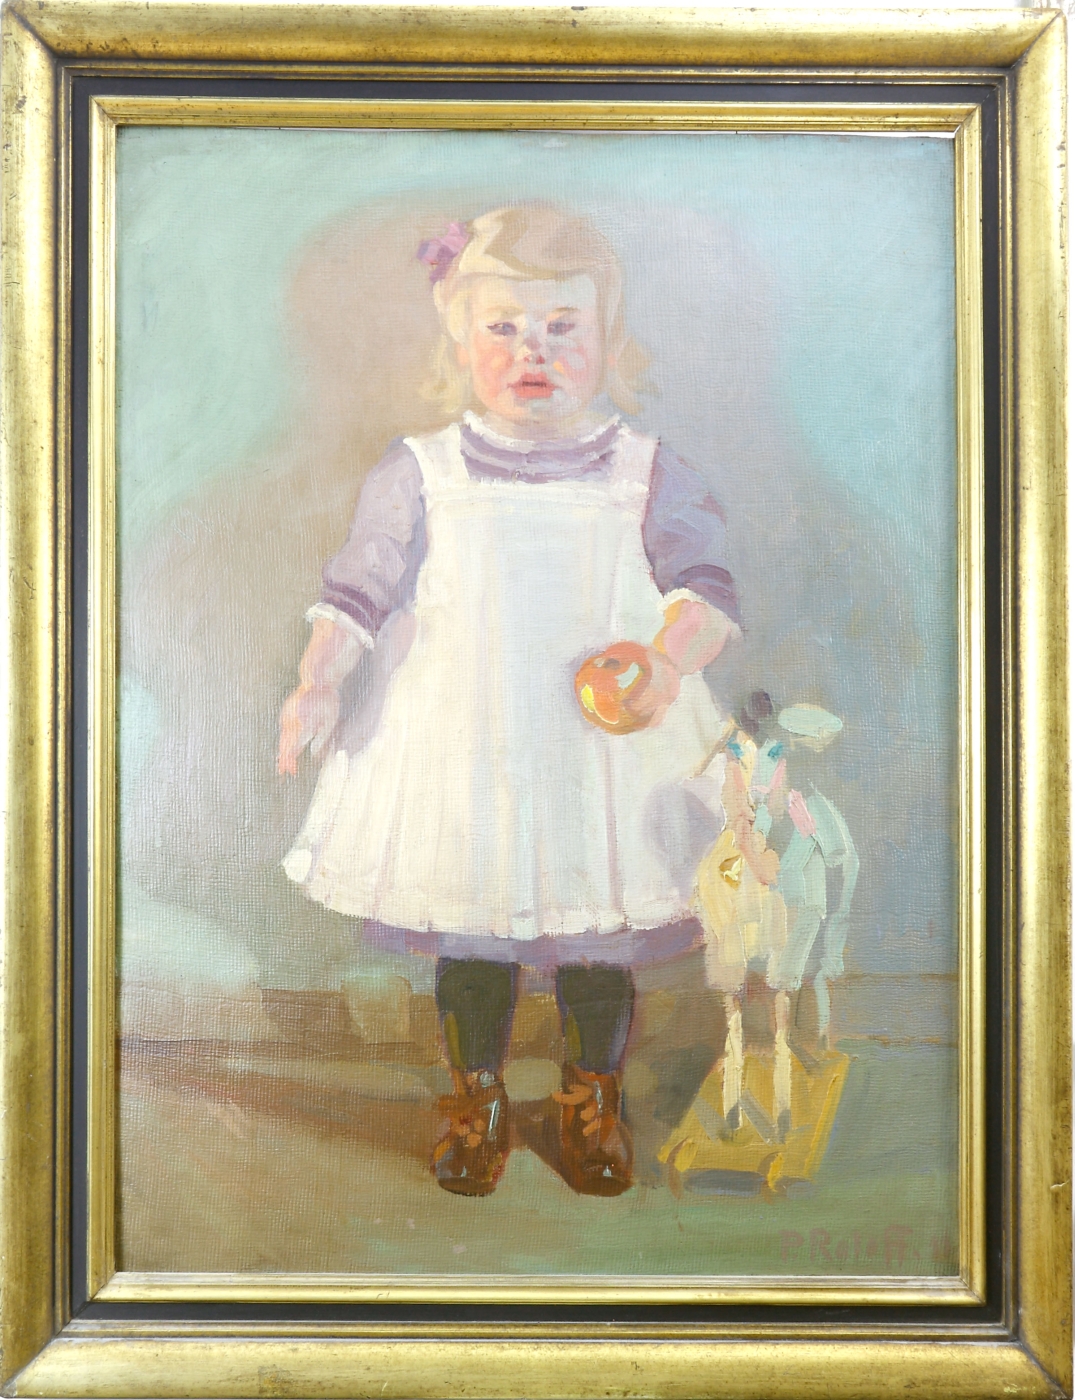 Auktionshaus Quentin Berlin  Gemälde Roloff  Paul  Stehendes kleines MÃ¤dchen mit Holzpferd. (19)11